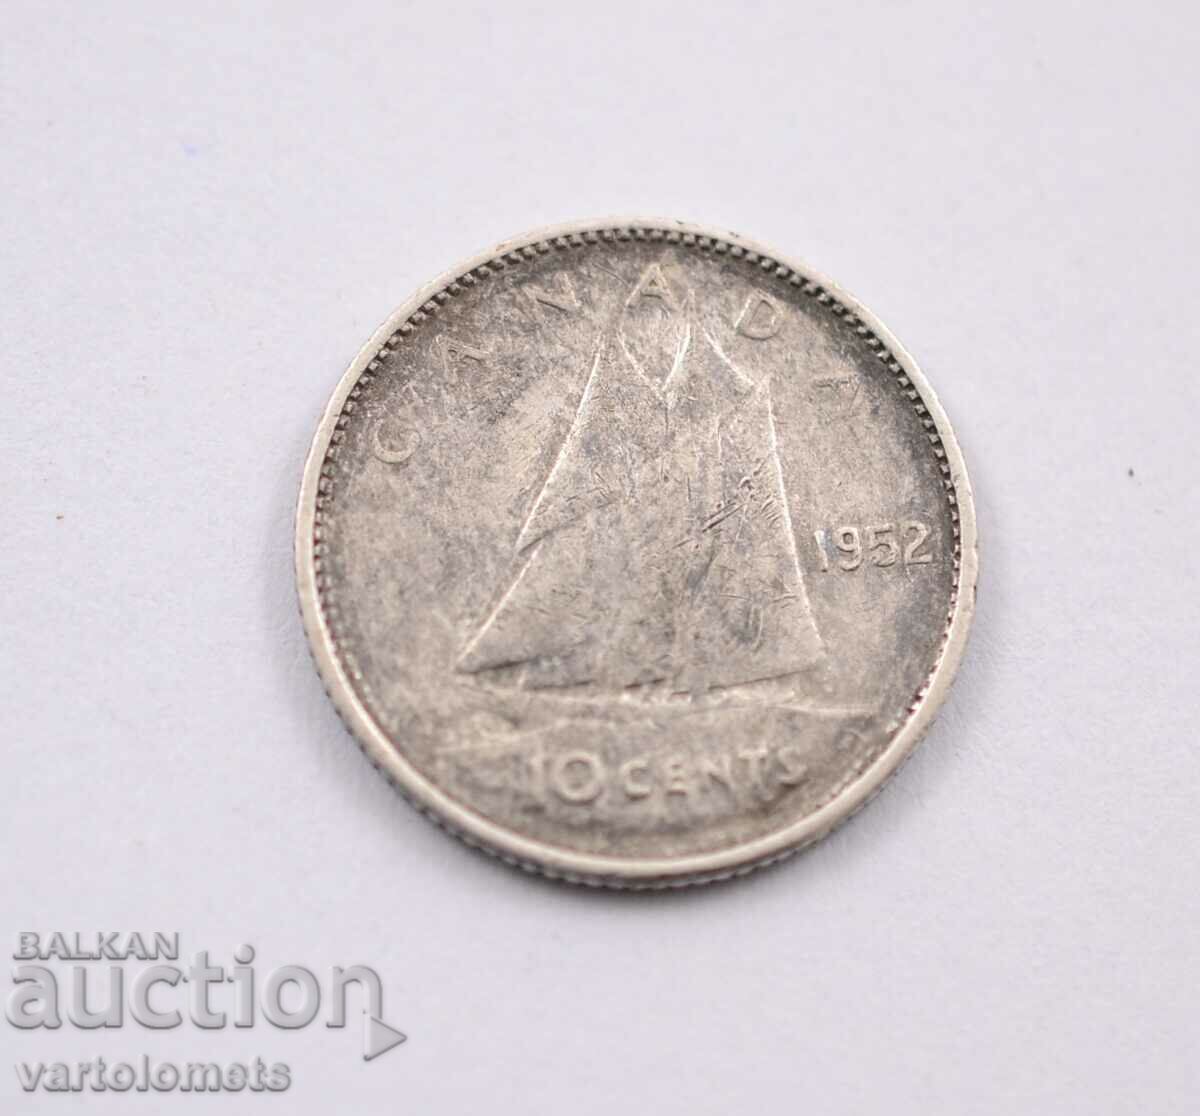 10 σεντ, 1952 - Καναδάς, Ασήμι 0,800, 2,33 g, ø 18,03 mm